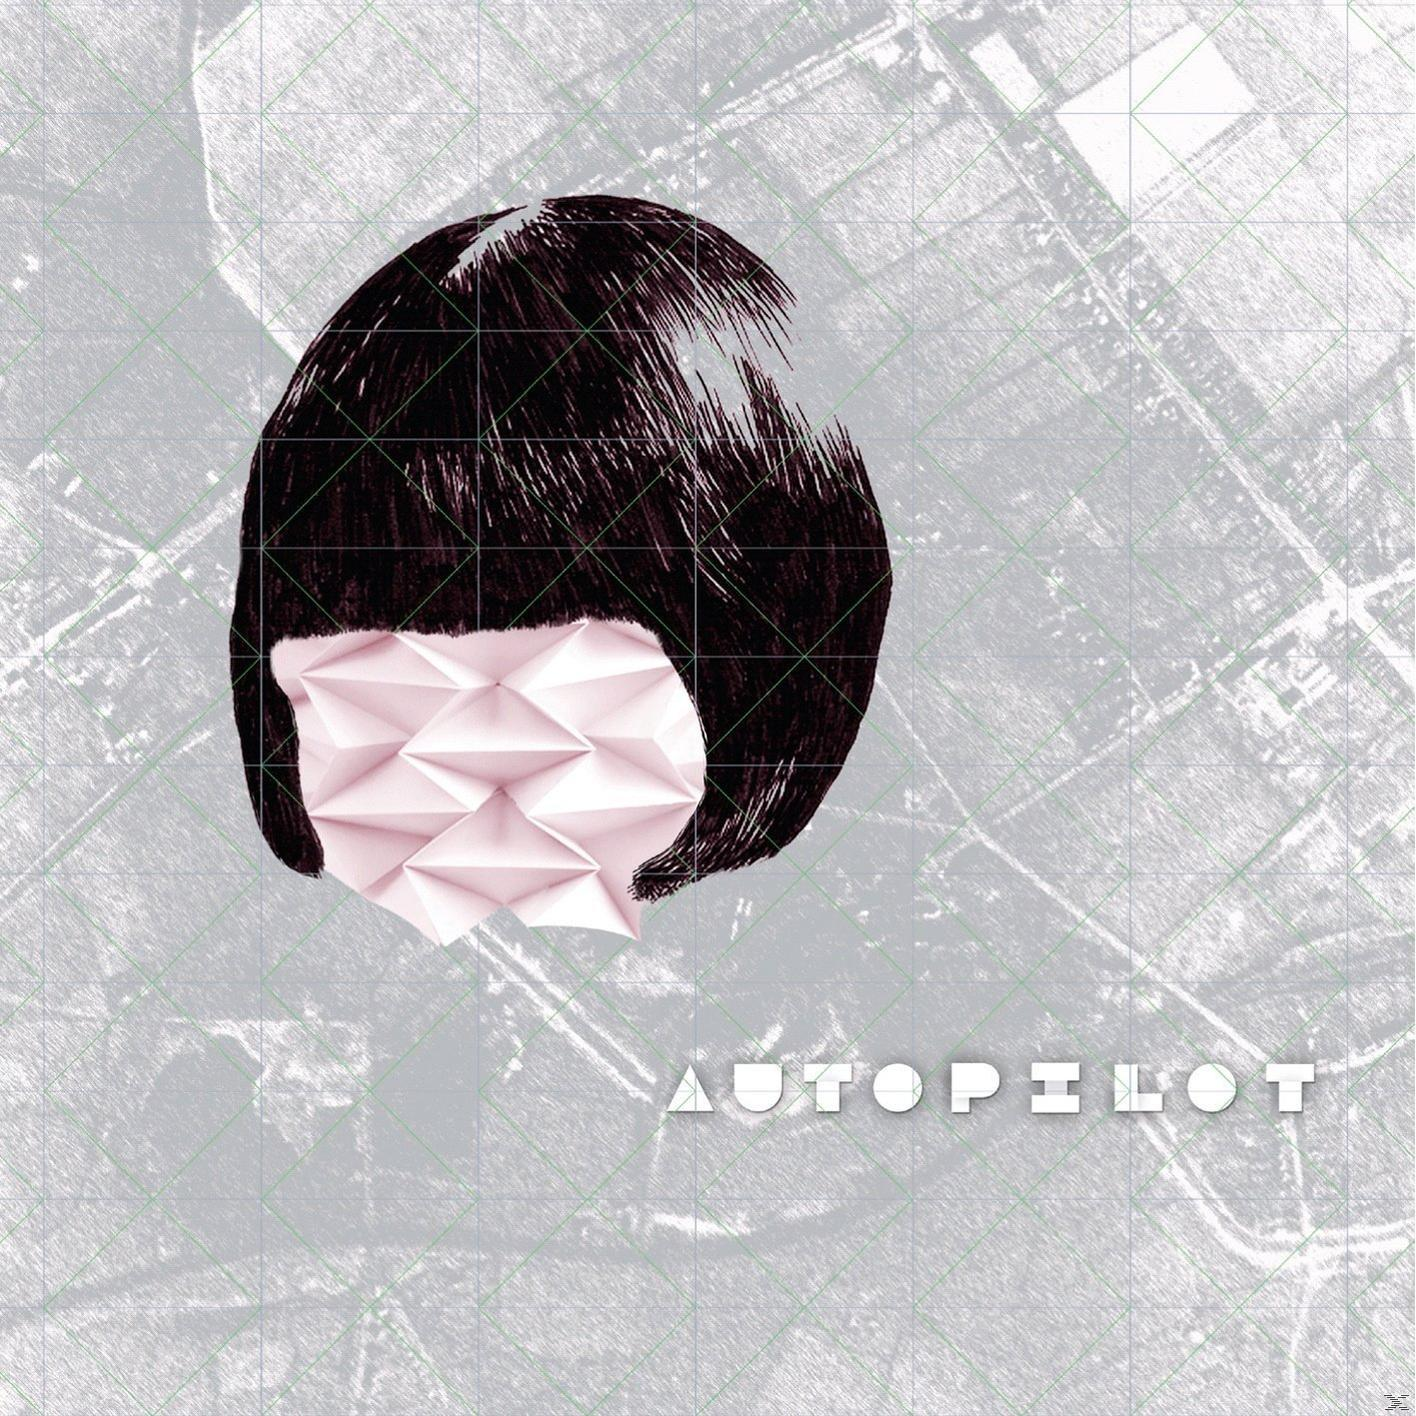 - VARIOUS (CD) Autopilot -